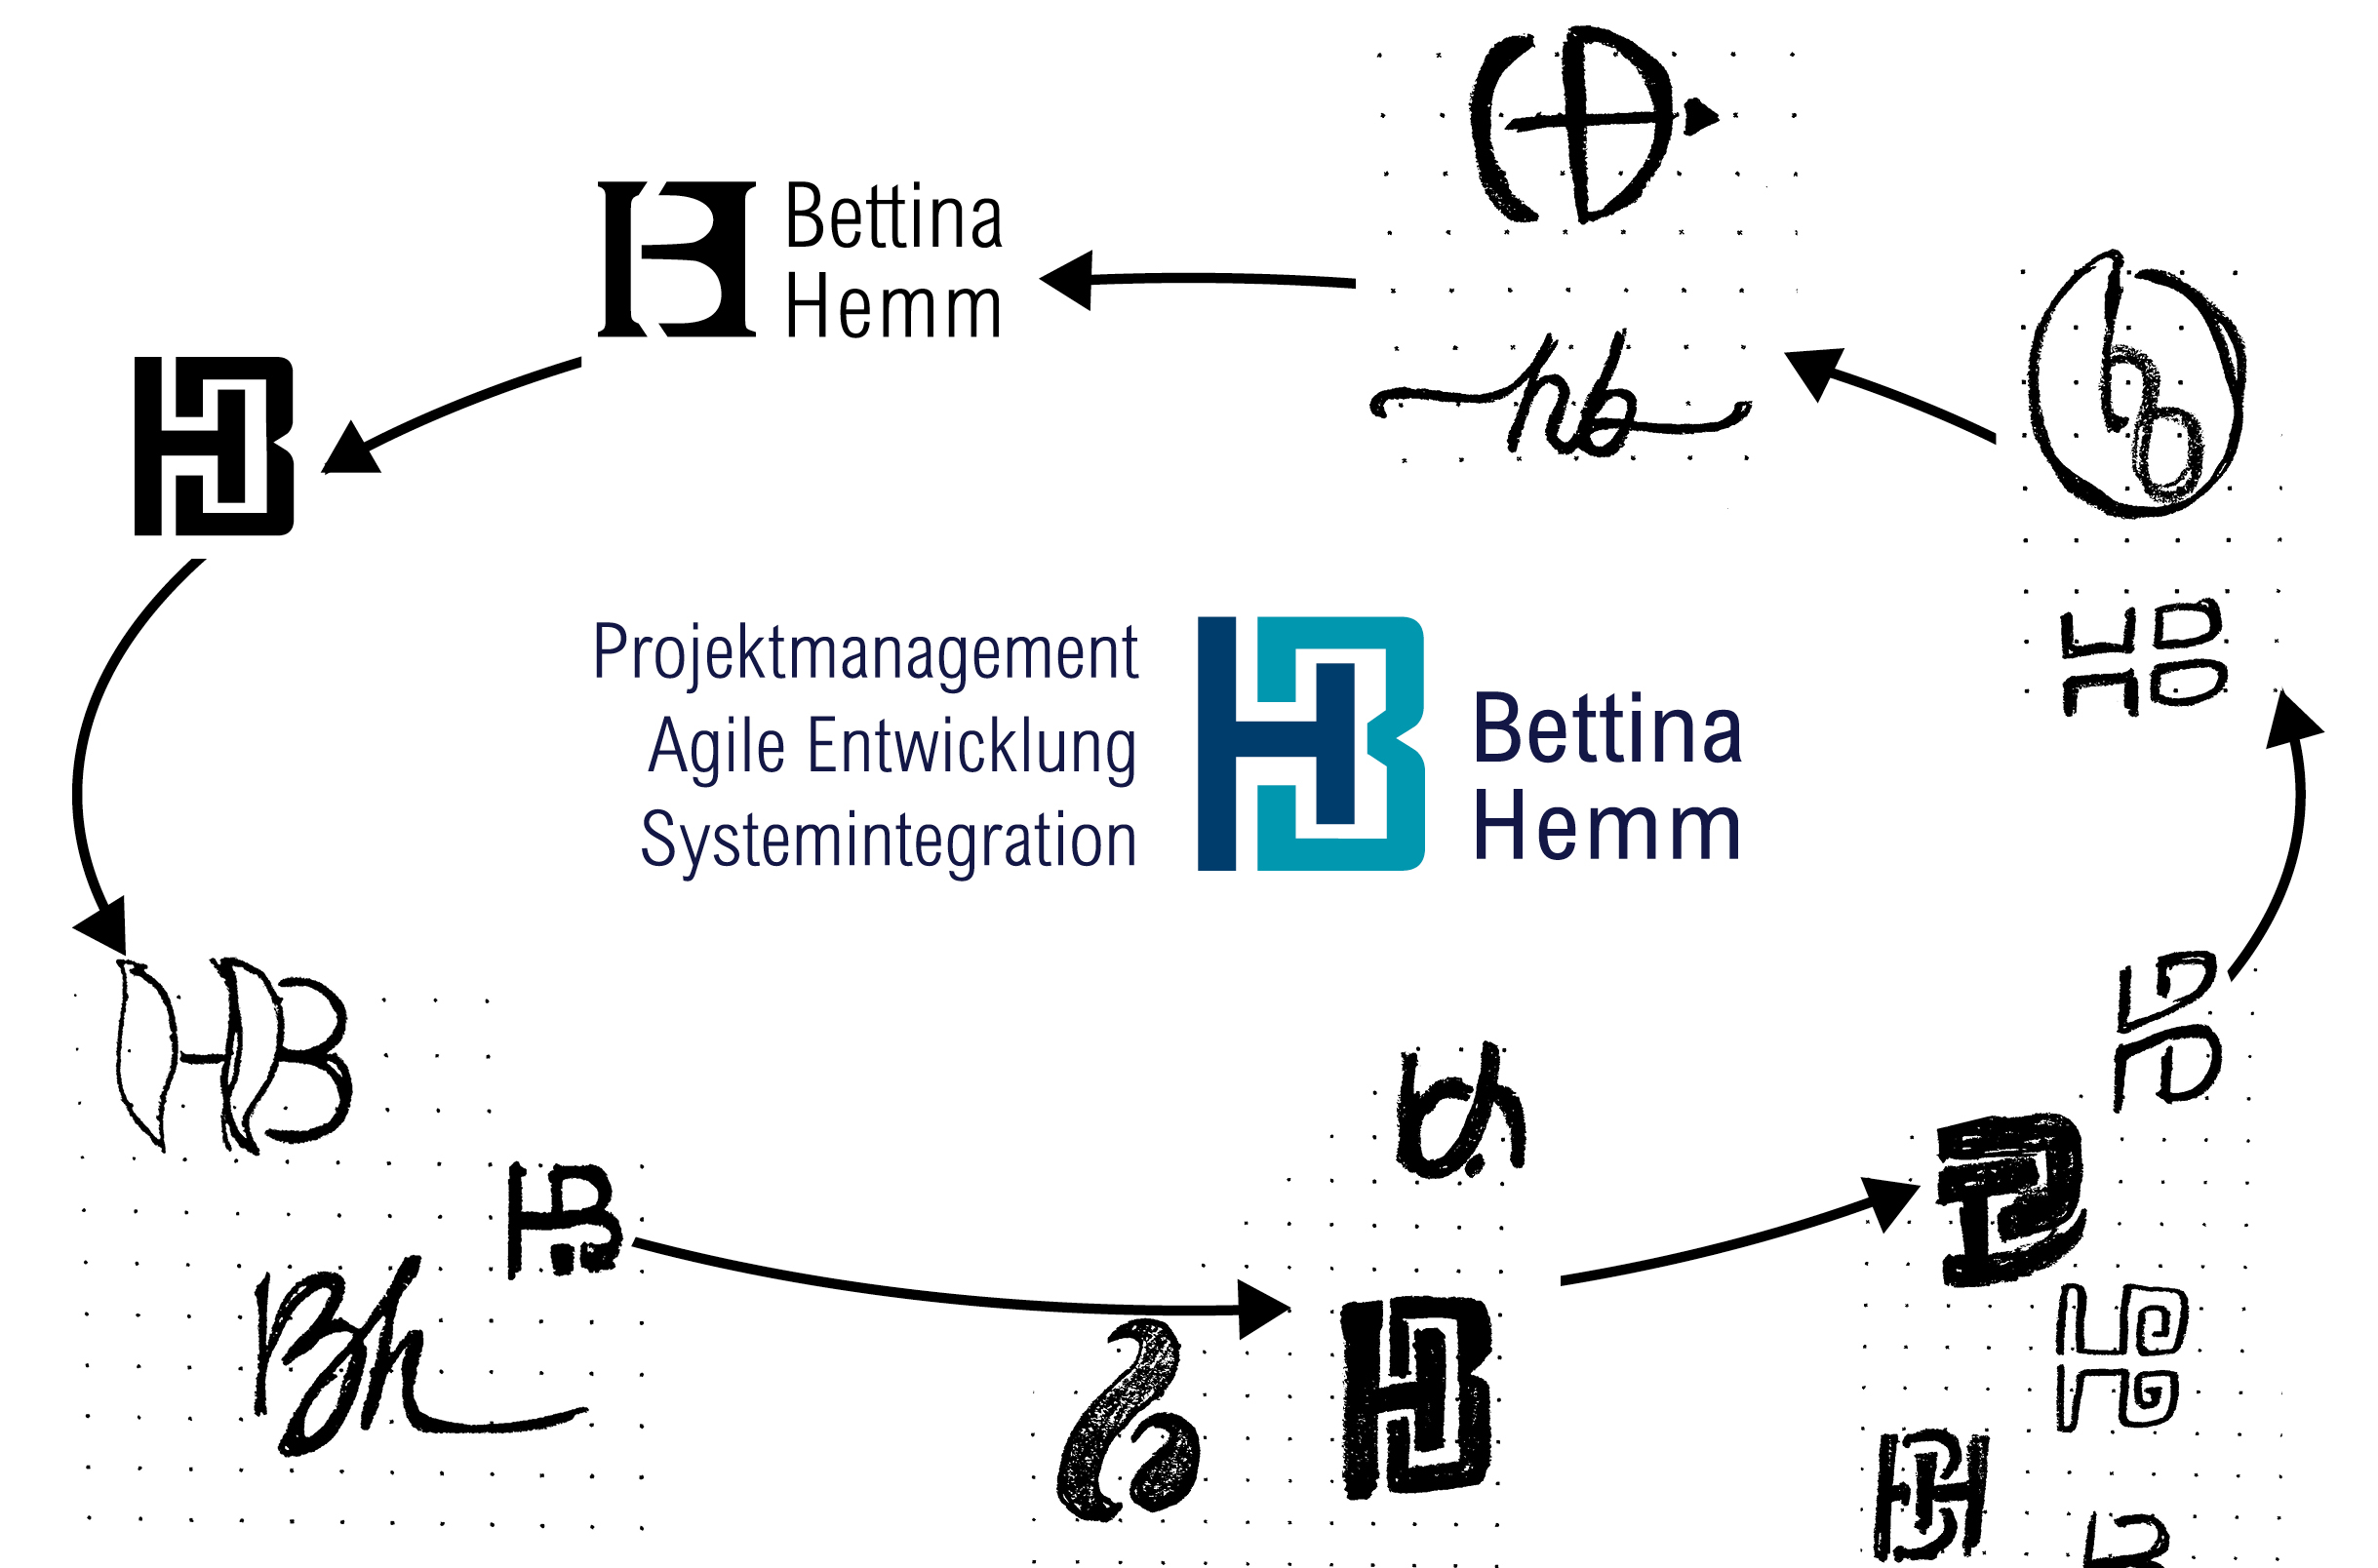 Bettina Hemm, Spezialistin im Engineering-Bereich – erhält einprägsames Logo in Ihren Initialien H und B